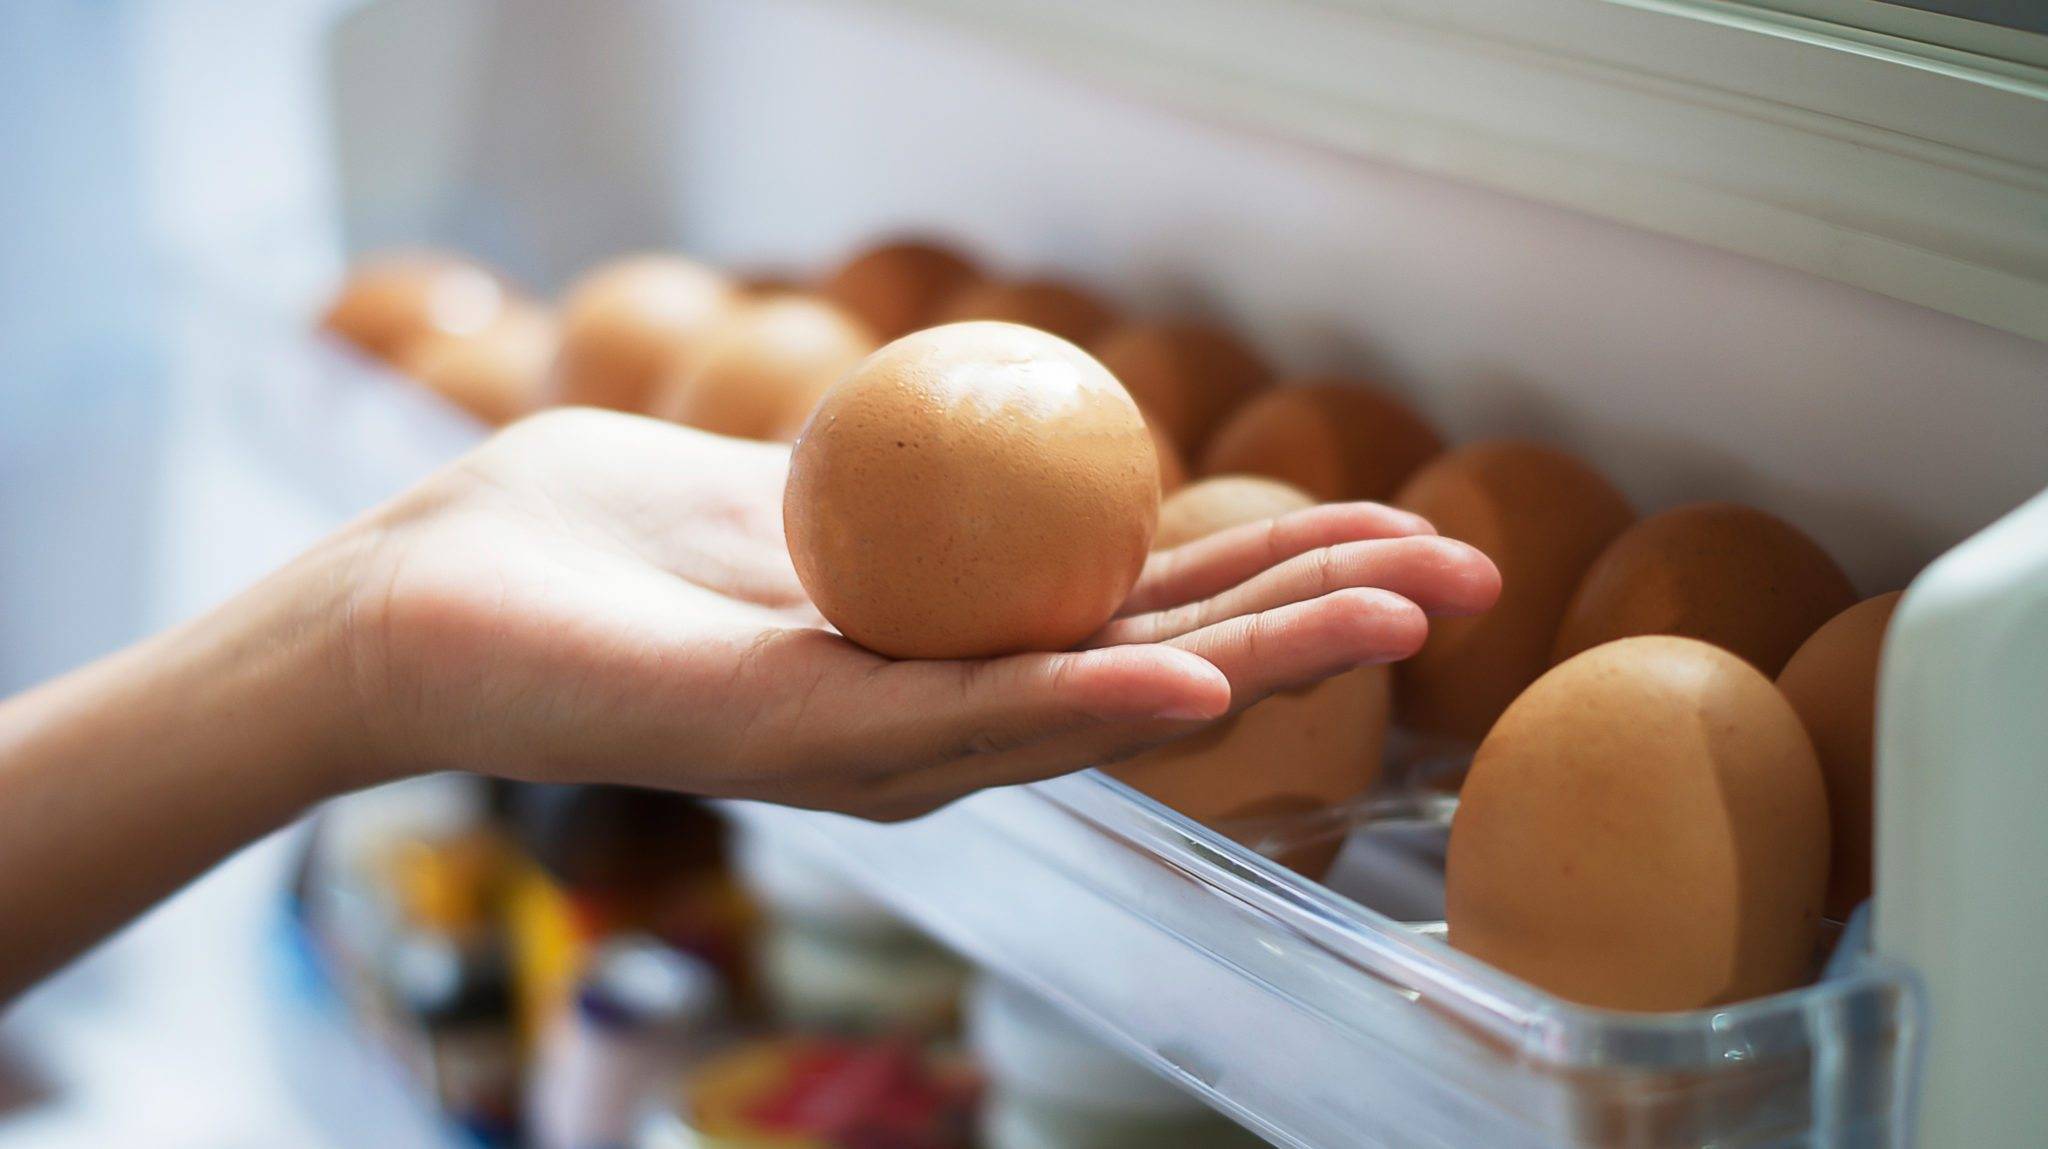 Вредно ли есть яйца каждый день и волноваться ли из-за холестерина?